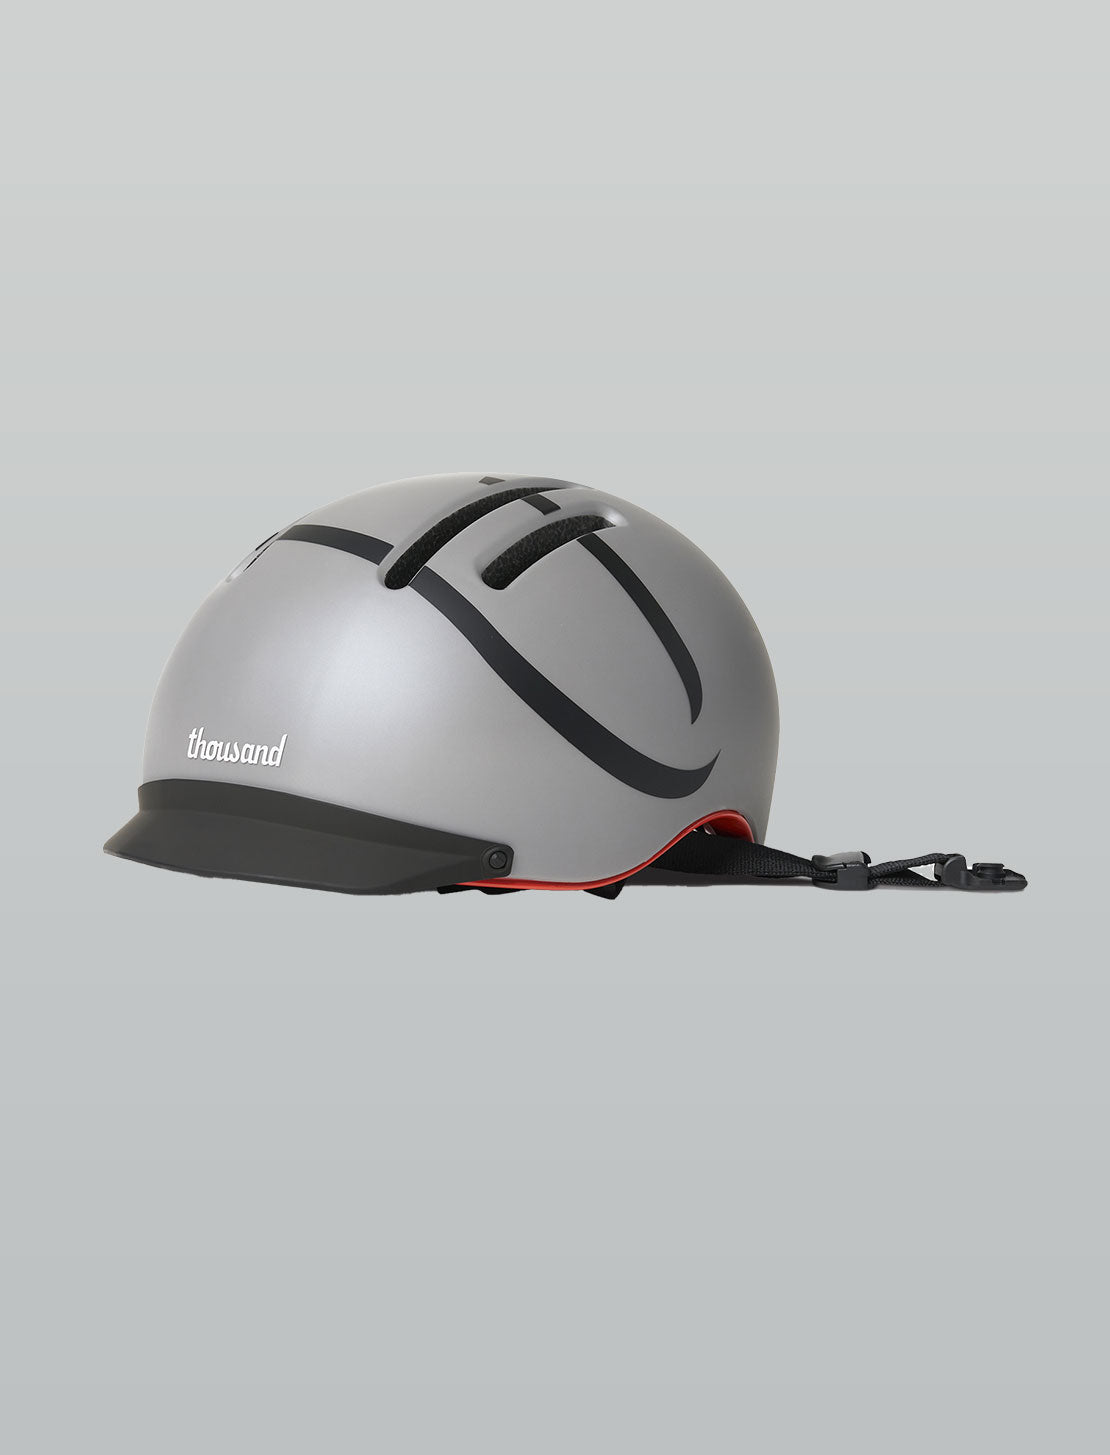 CHPT3 x Thousand Barrivell MIPS Helmet